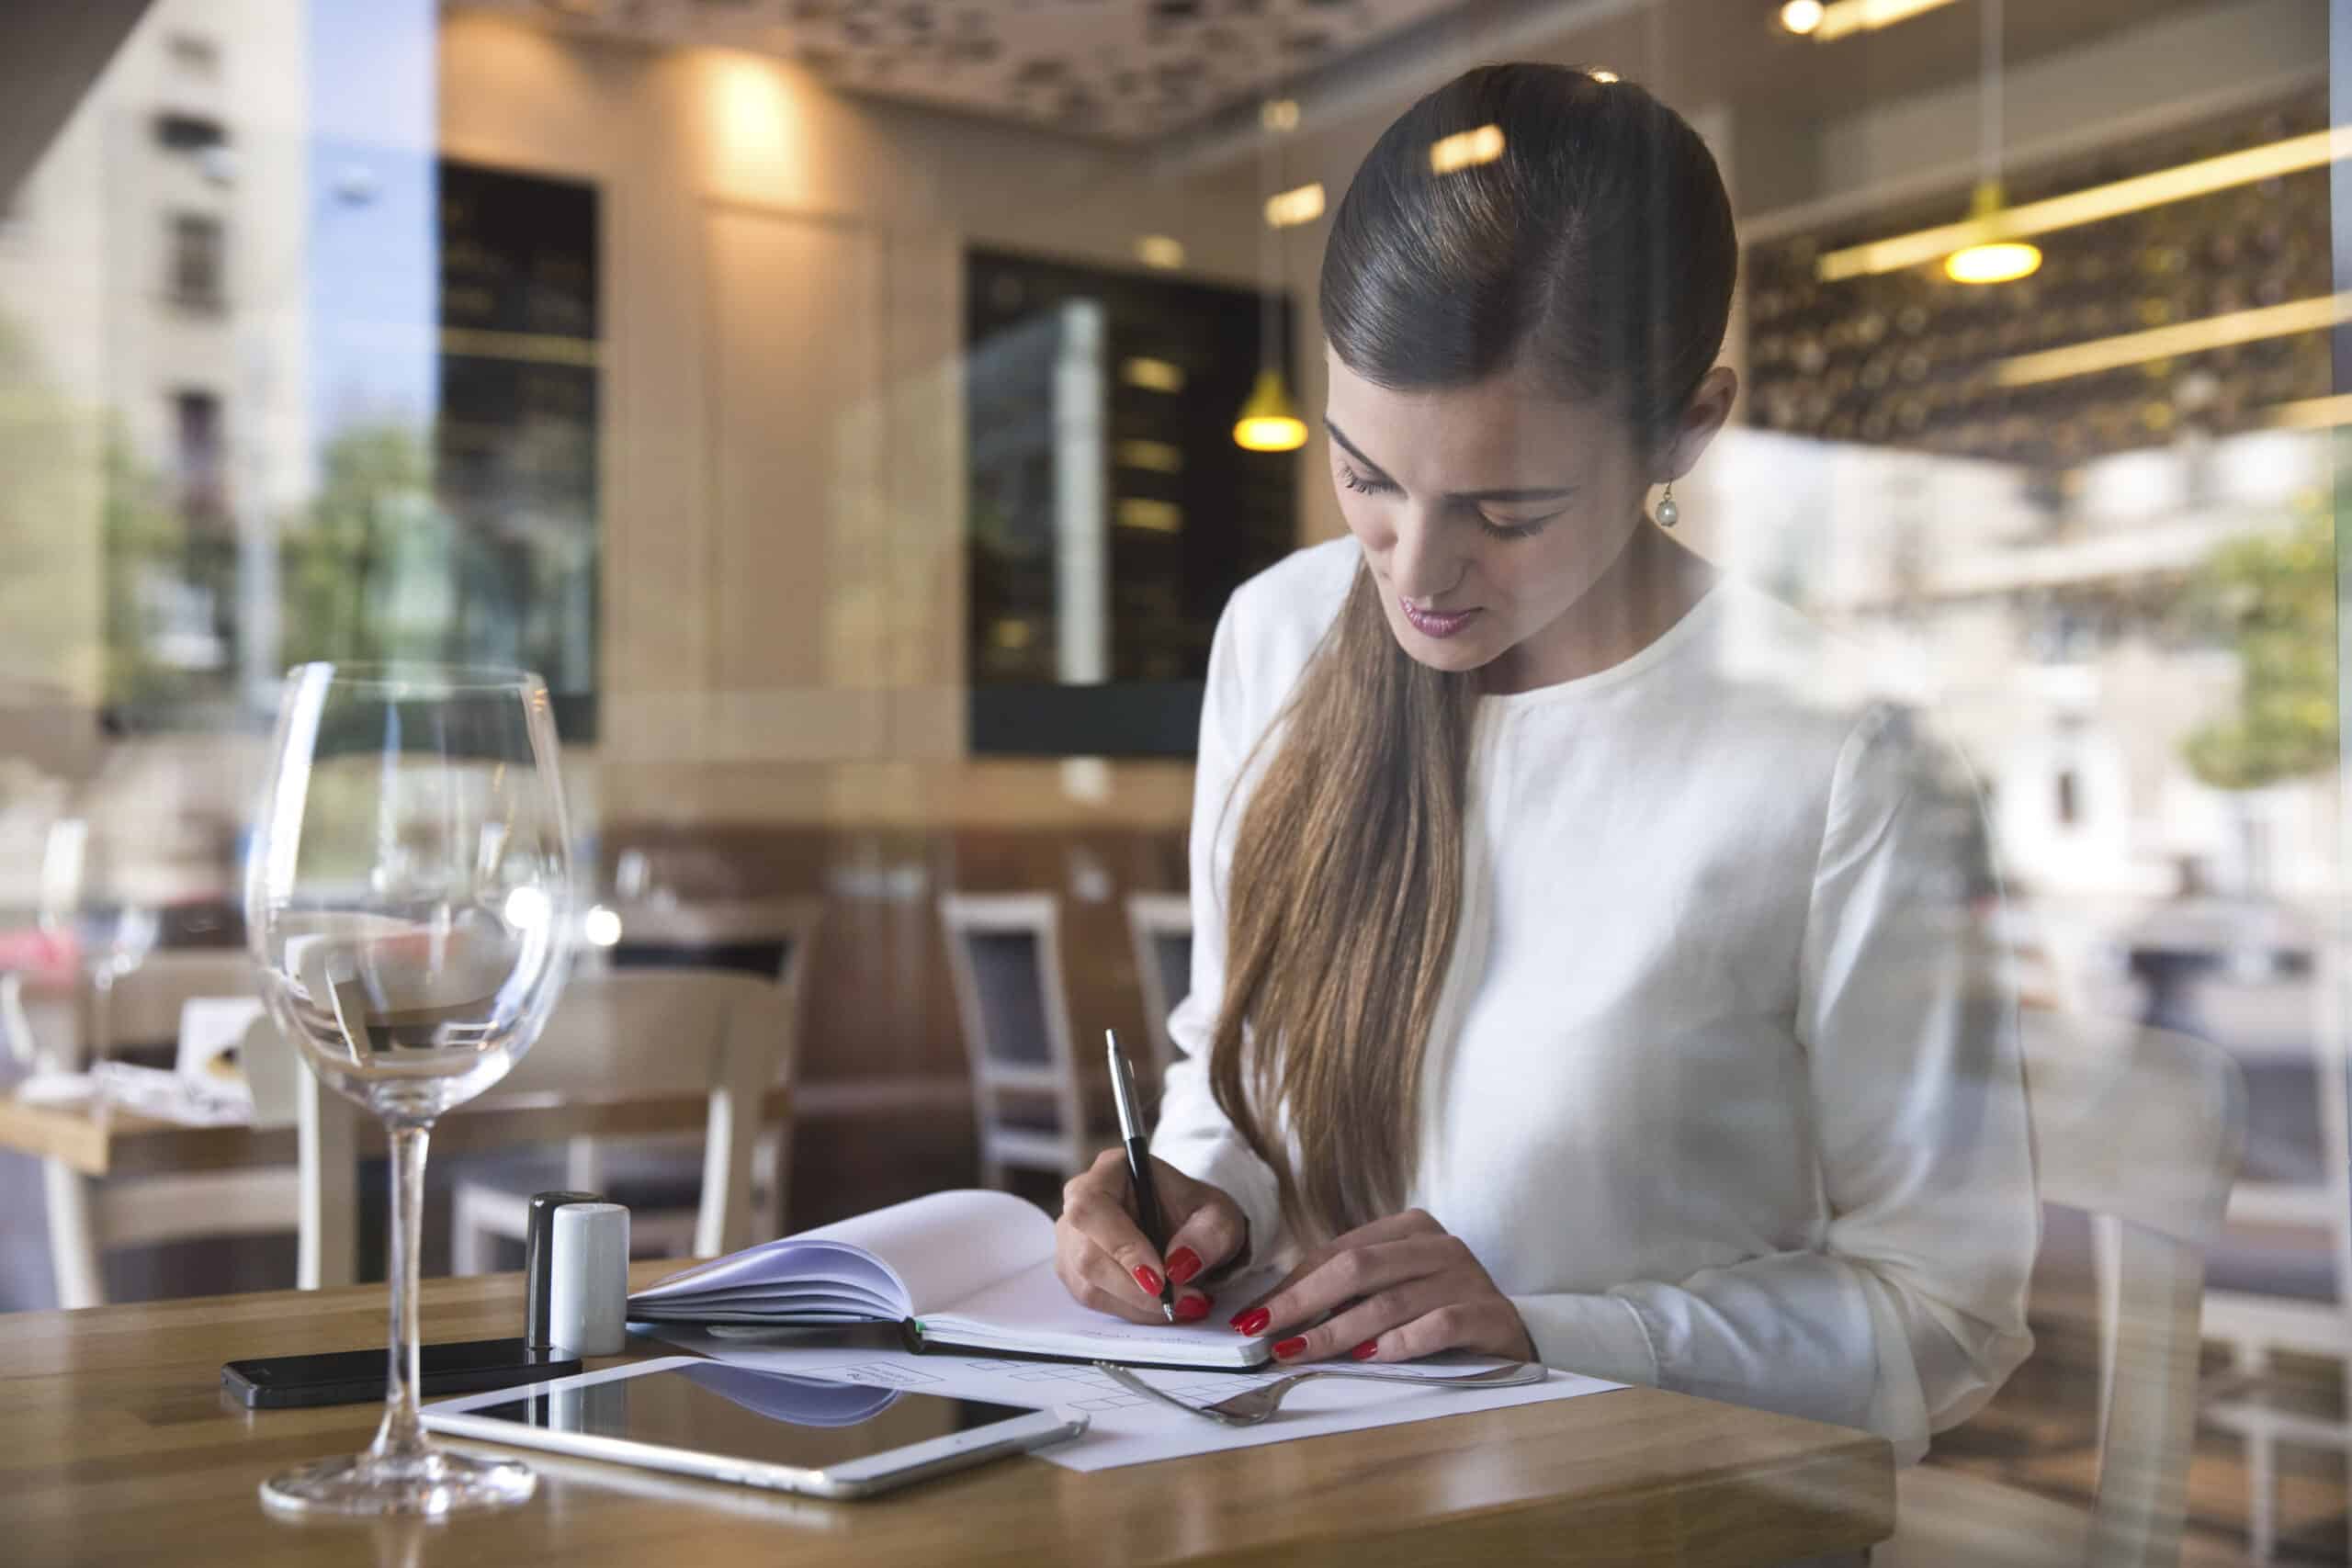 Eine Frau in einer weißen Bluse sitzt konzentriert an einem Cafétisch und schreibt in ein Notizbuch. Neben ihr stehen ein Glas Wasser und ein Smartphone. Der Blick ist durch ein Fenster möglich. © Fotografie Tomas Rodriguez